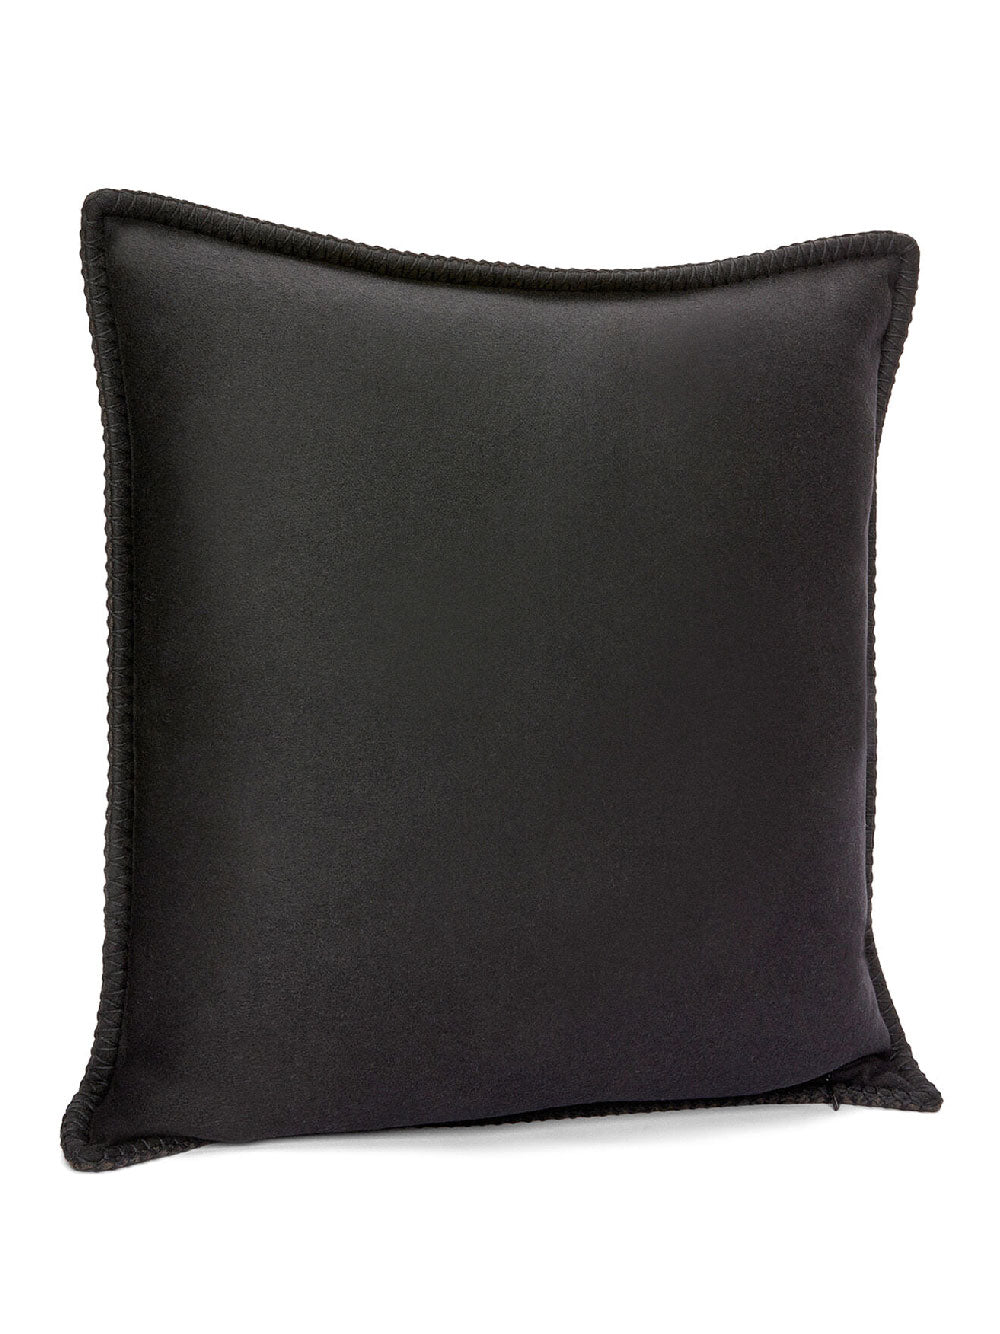 Anagram cushion